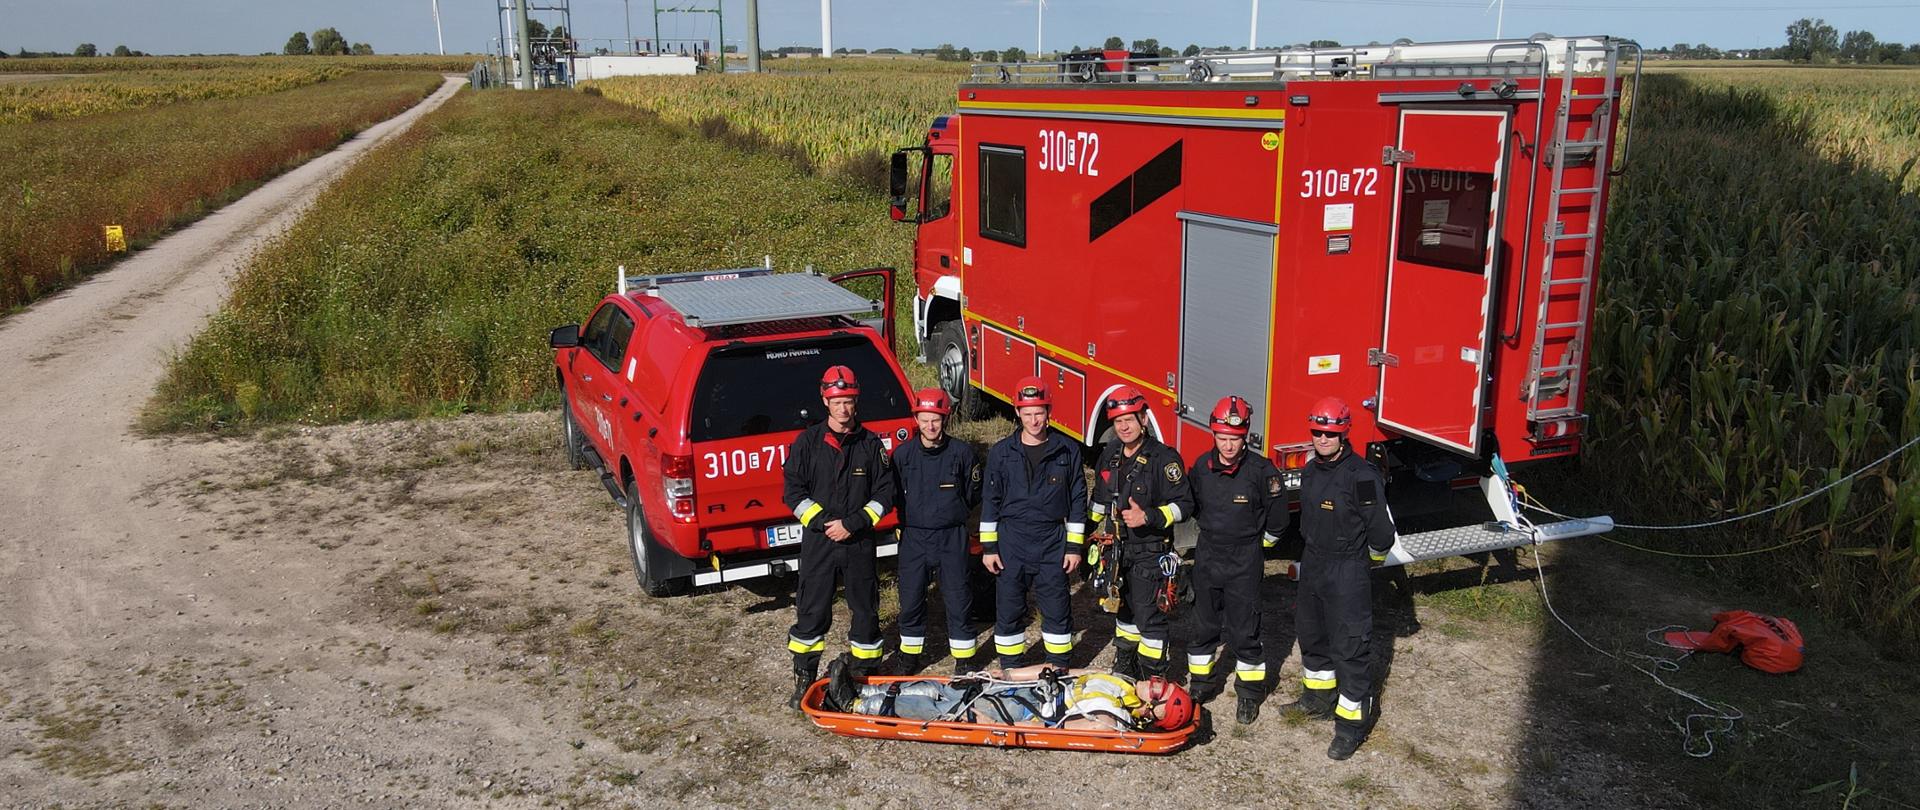 Sześciu ratowników pozuje do zdjęcia na tle wozów strażackich przed nimi manekin na desce ratowniczej.